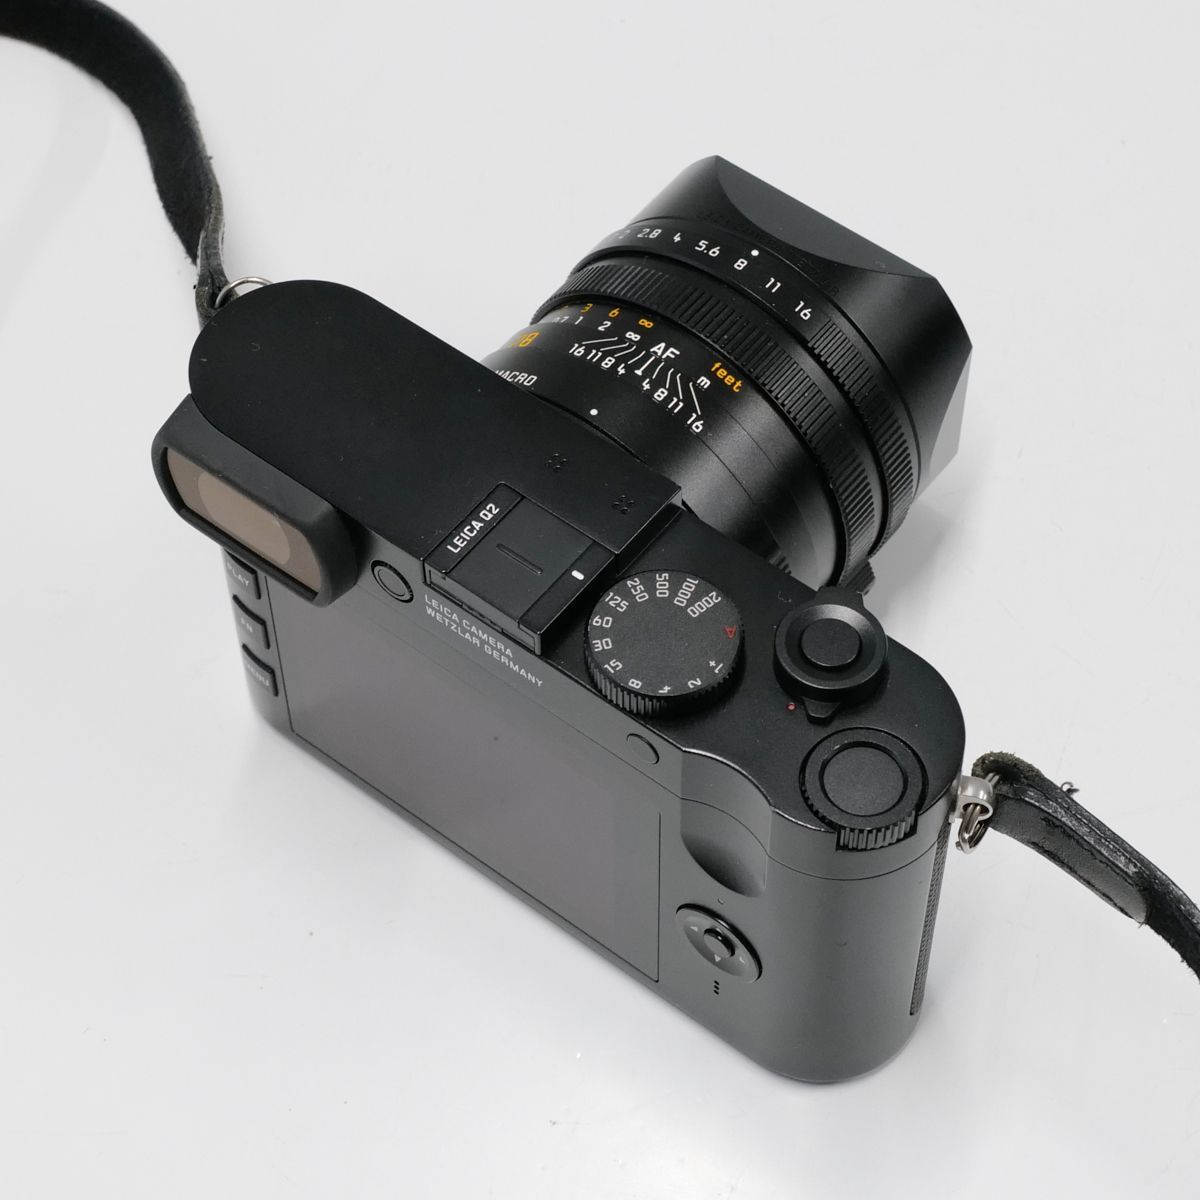 LEICA Q2 USED прекрасный товар цифровая камера корпус + аккумулятор полный размер одиночный подпалина пункт zmi look sf1.7/28mm ASPH высококлассный темно синий teji исправно работающий товар б/у CP5500